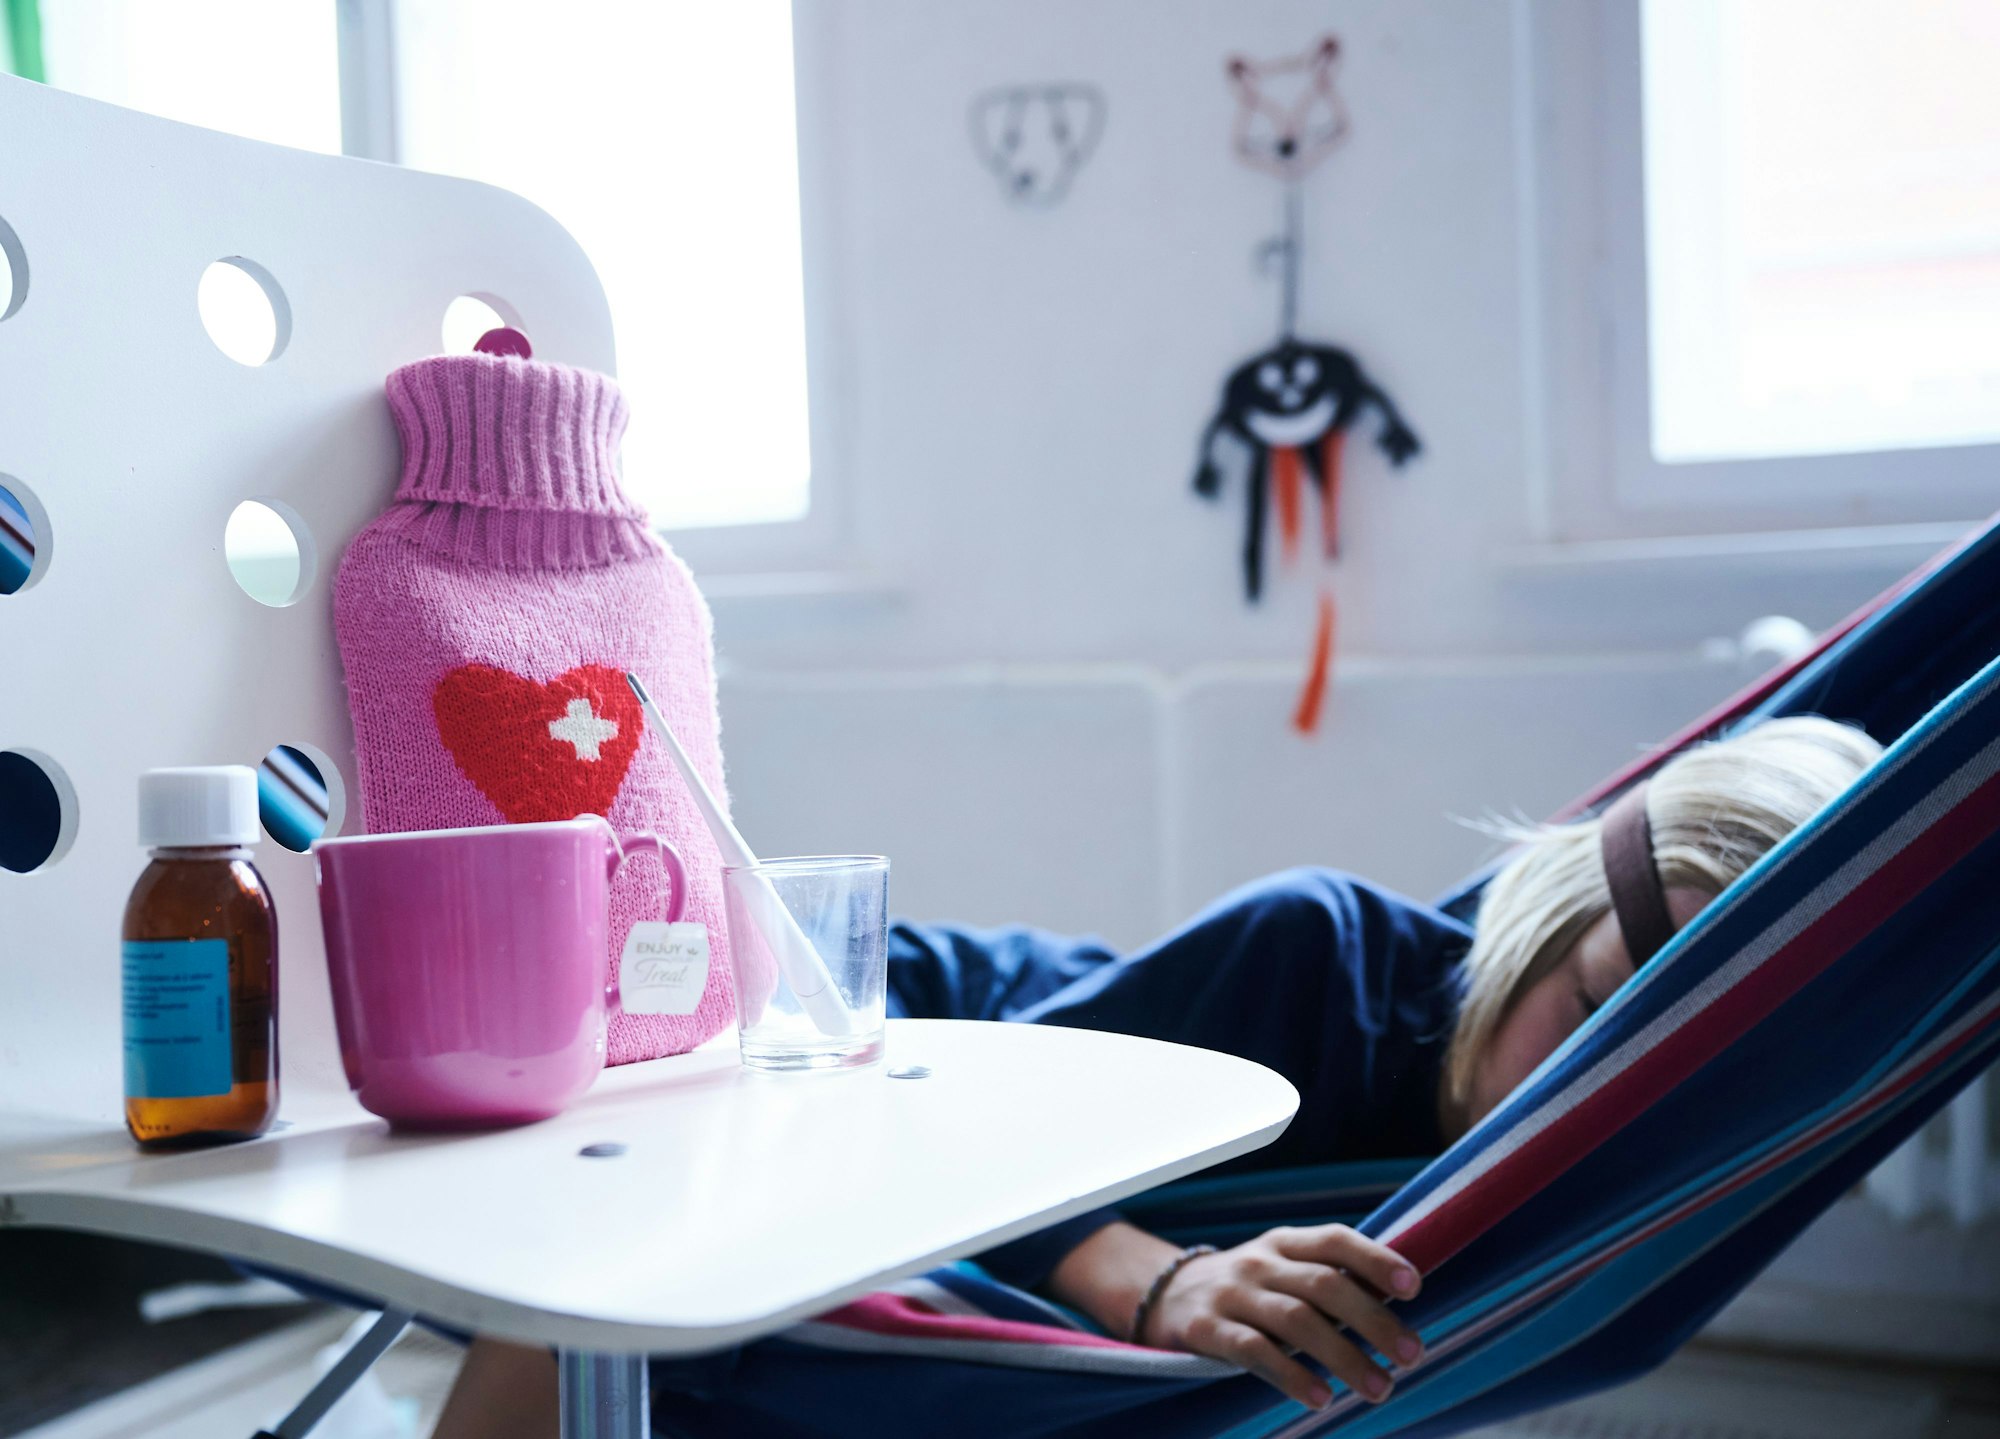 Fieberthermometer, Hustensaft, Wärmflasche und eine Tasse Tee stehen auf einem Stuhl, während ein Kind im Hintergrund in einer Hängematte liegt.